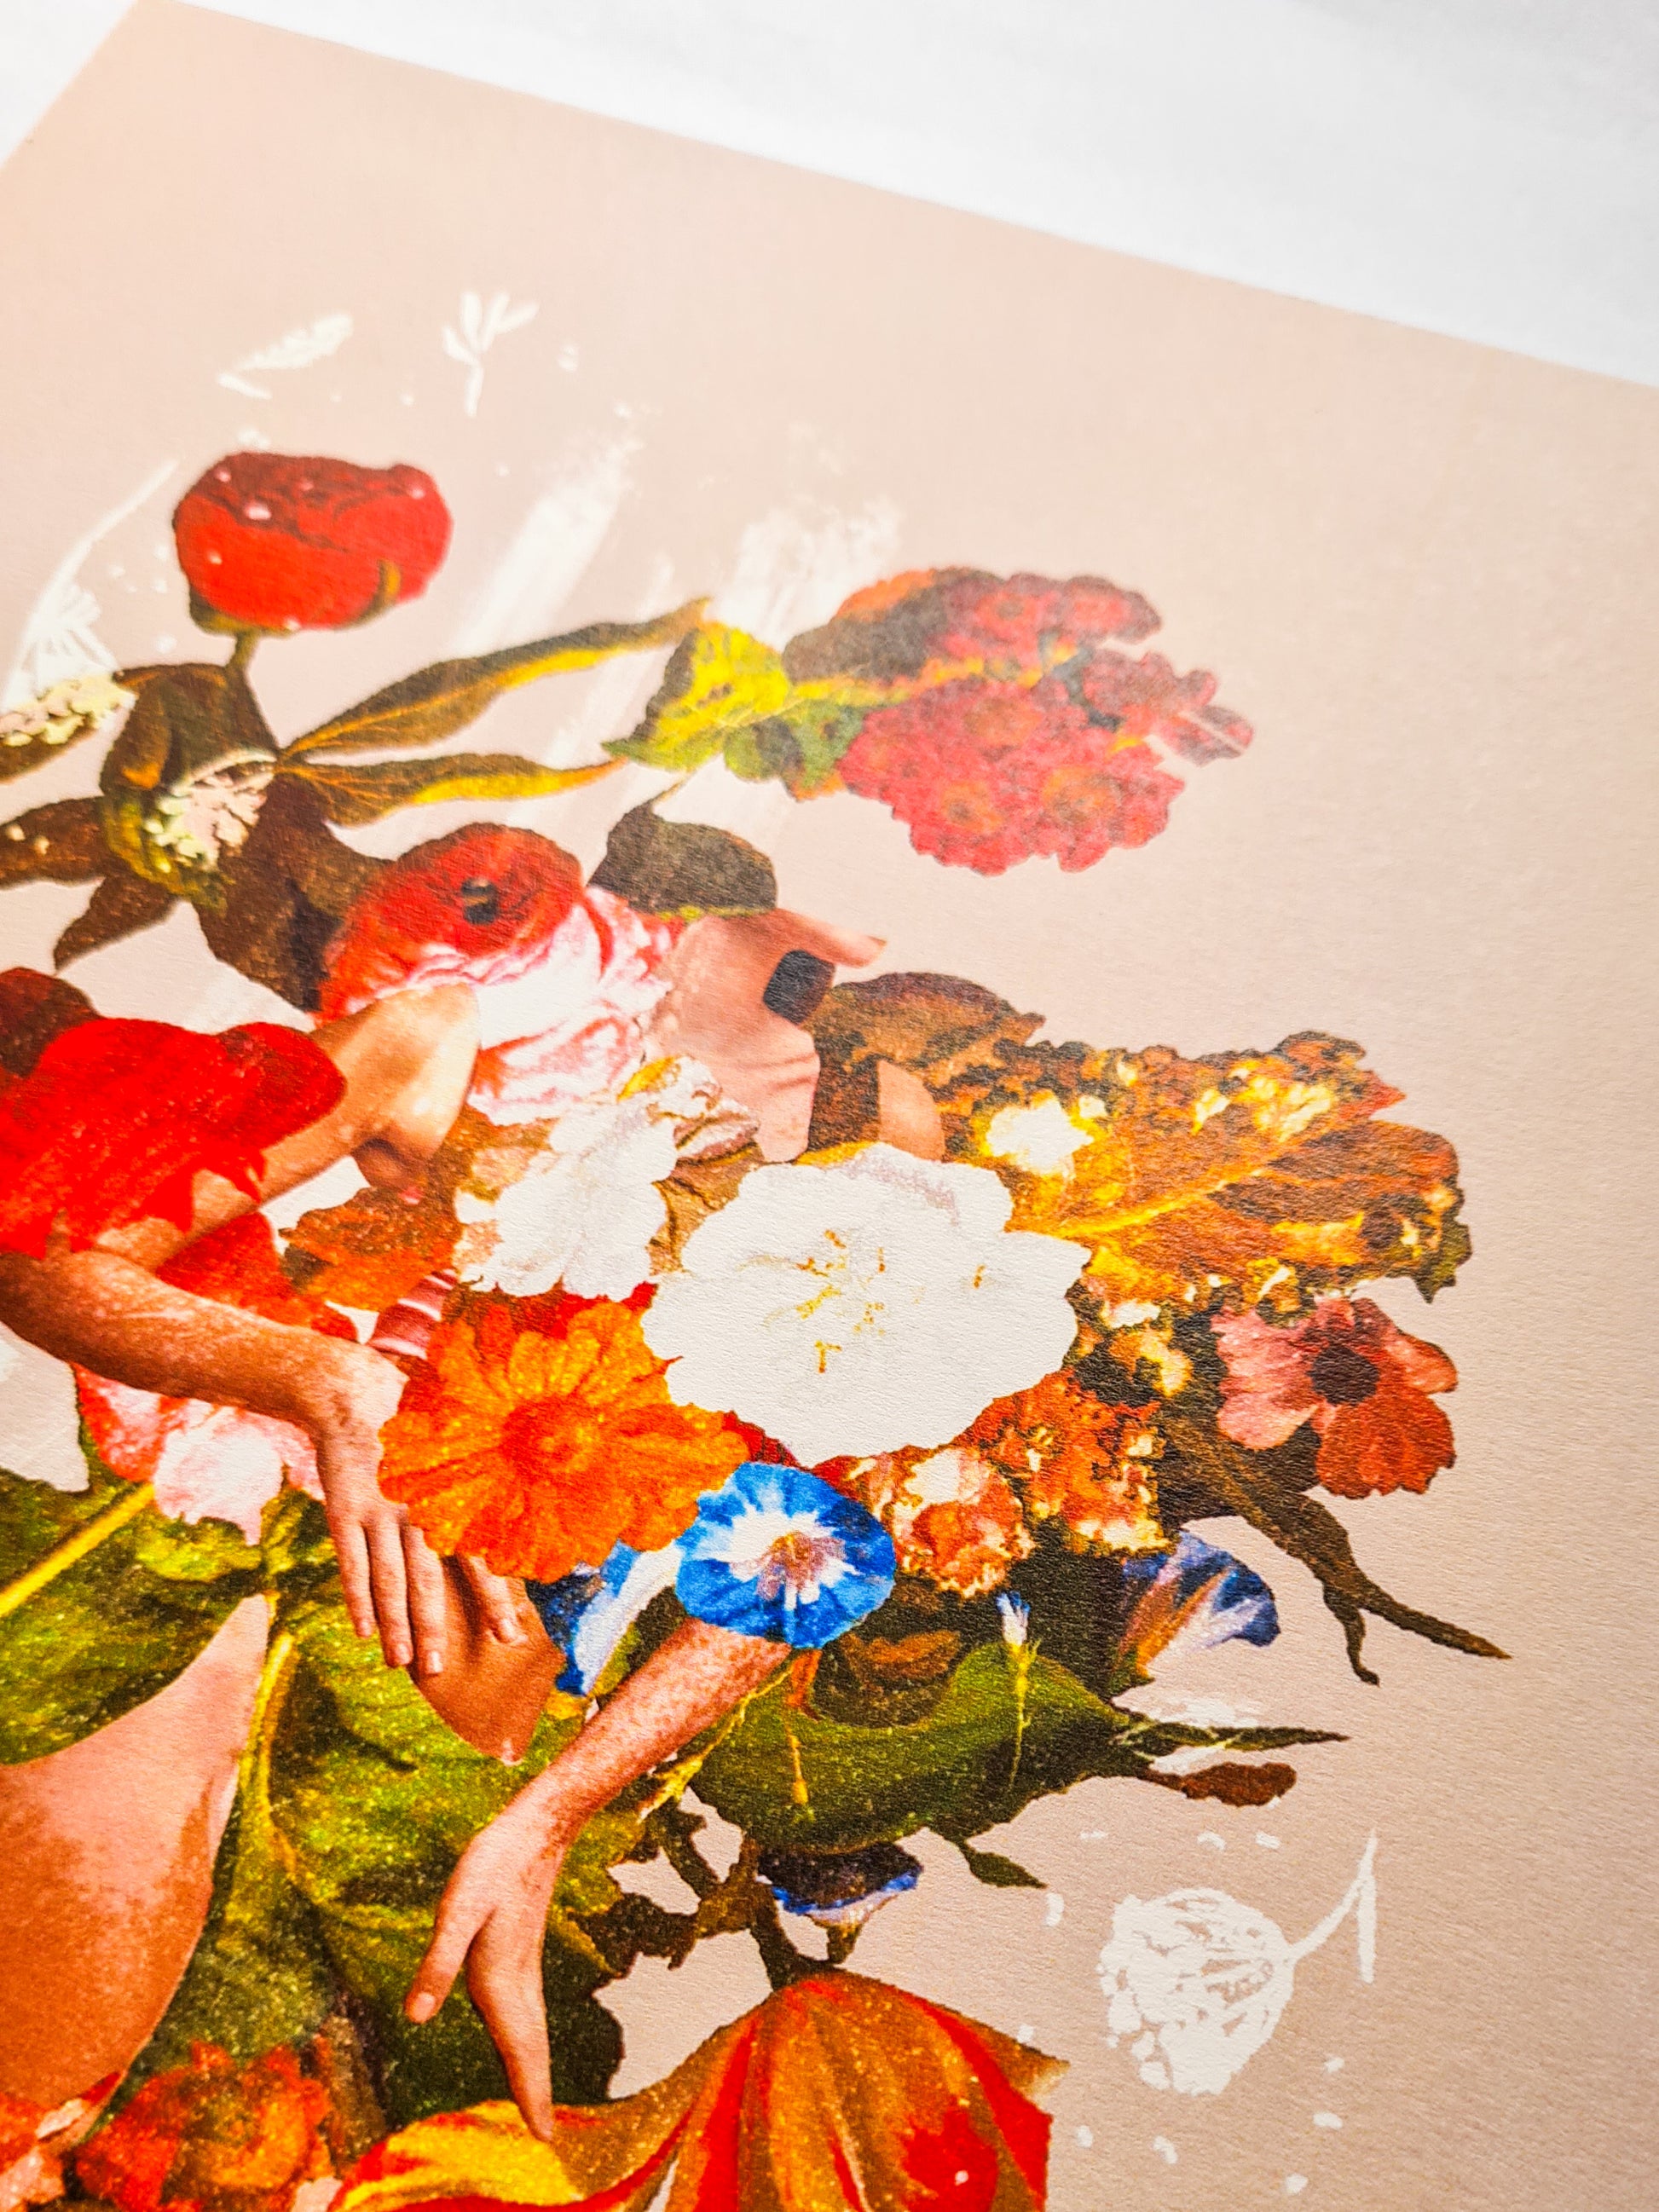 My Skin in Bloom, 5" x 7" / A4 art print - Woman Create